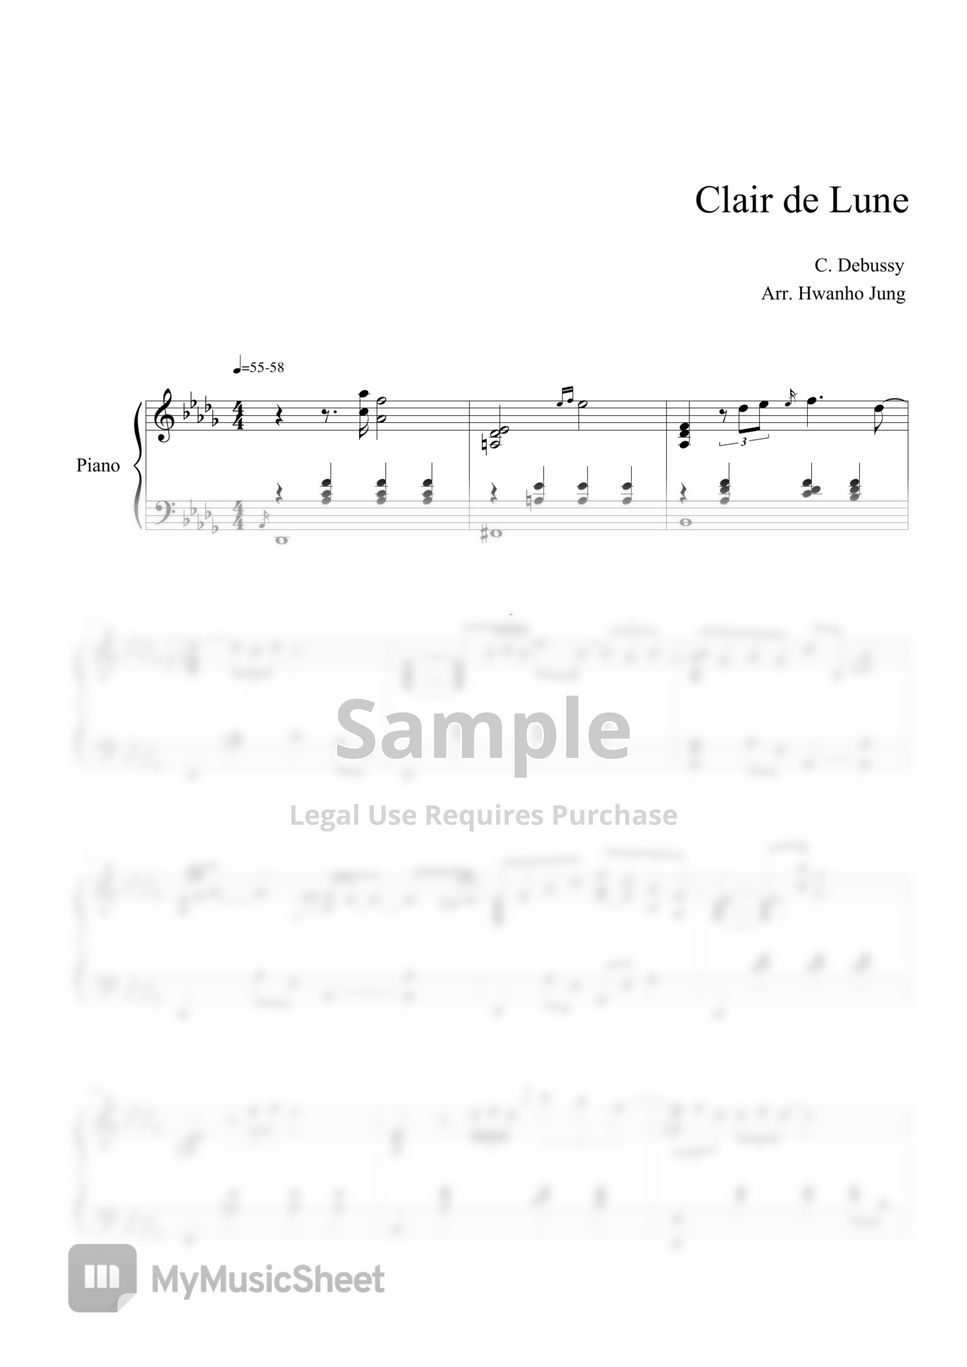 C.Debussy - Clair de Lune (Piano Arrangement) by Hwan ho Jung